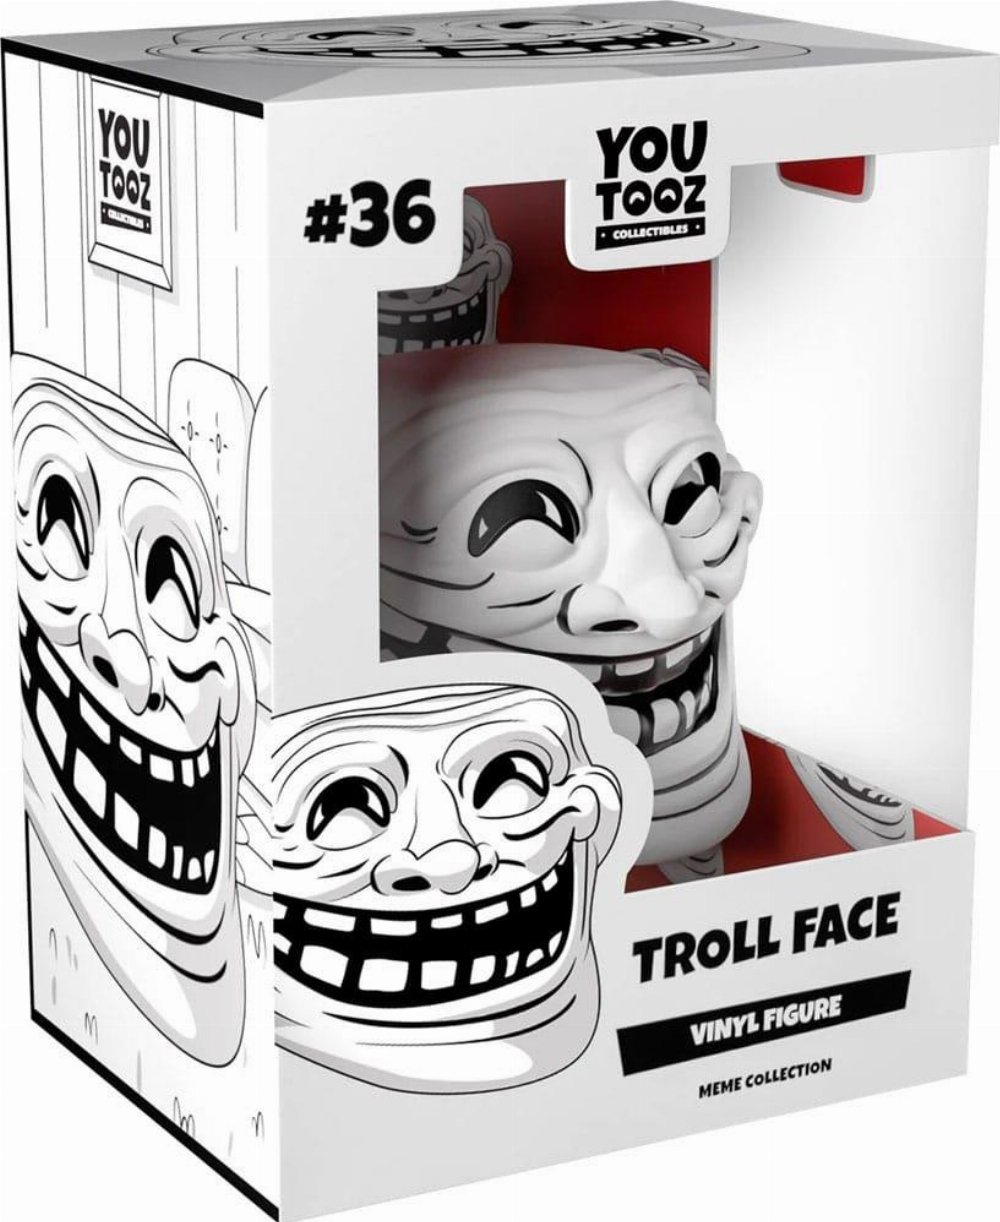 Trollface, a trademarked meme ‣ Fameable